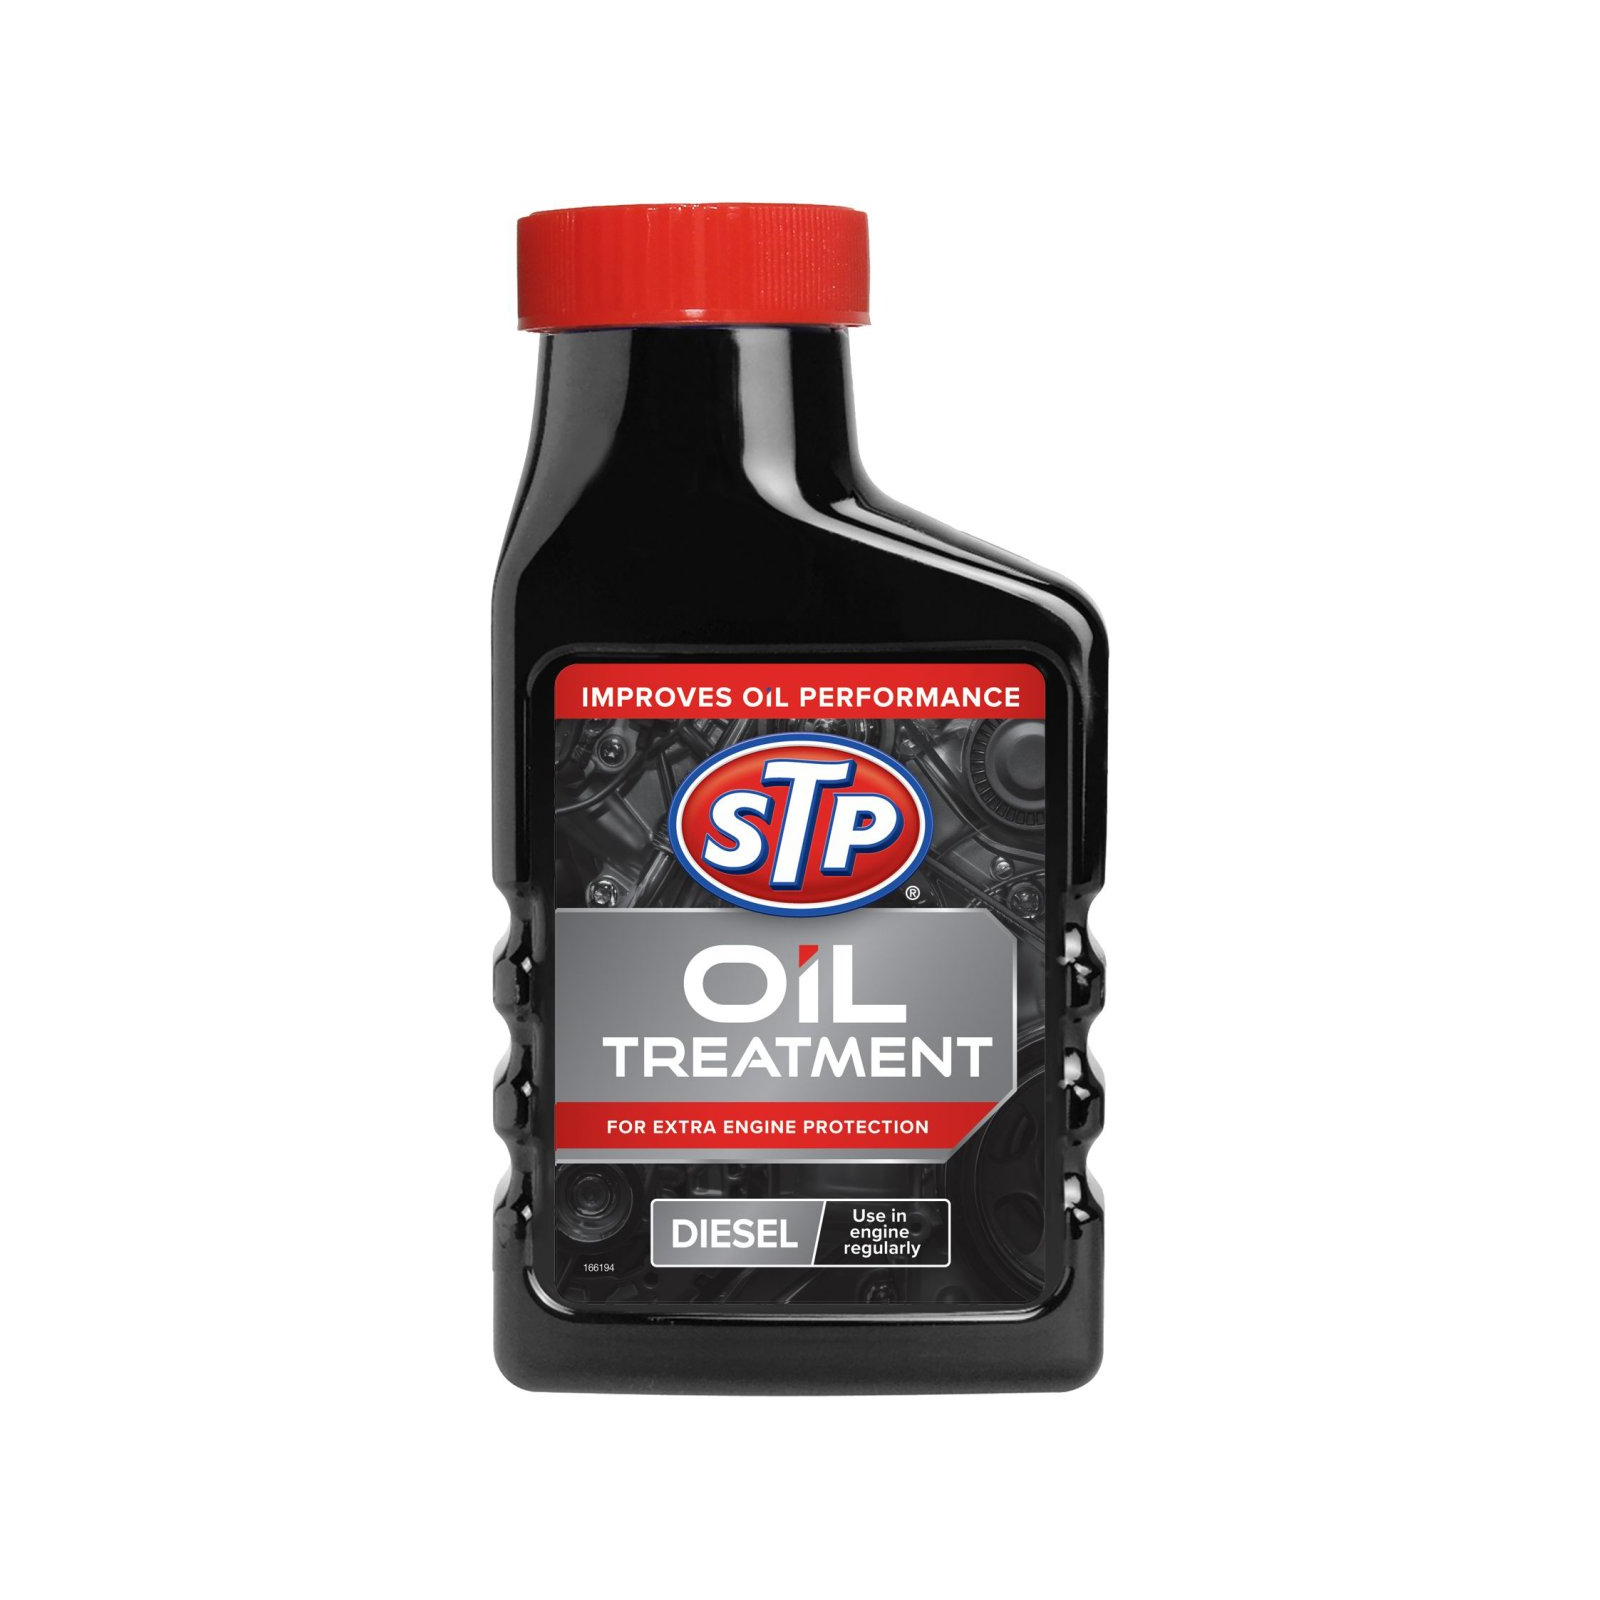 Присадка автомобильная STP Oil Treatment for Diesel Engines, 300мл (74369)